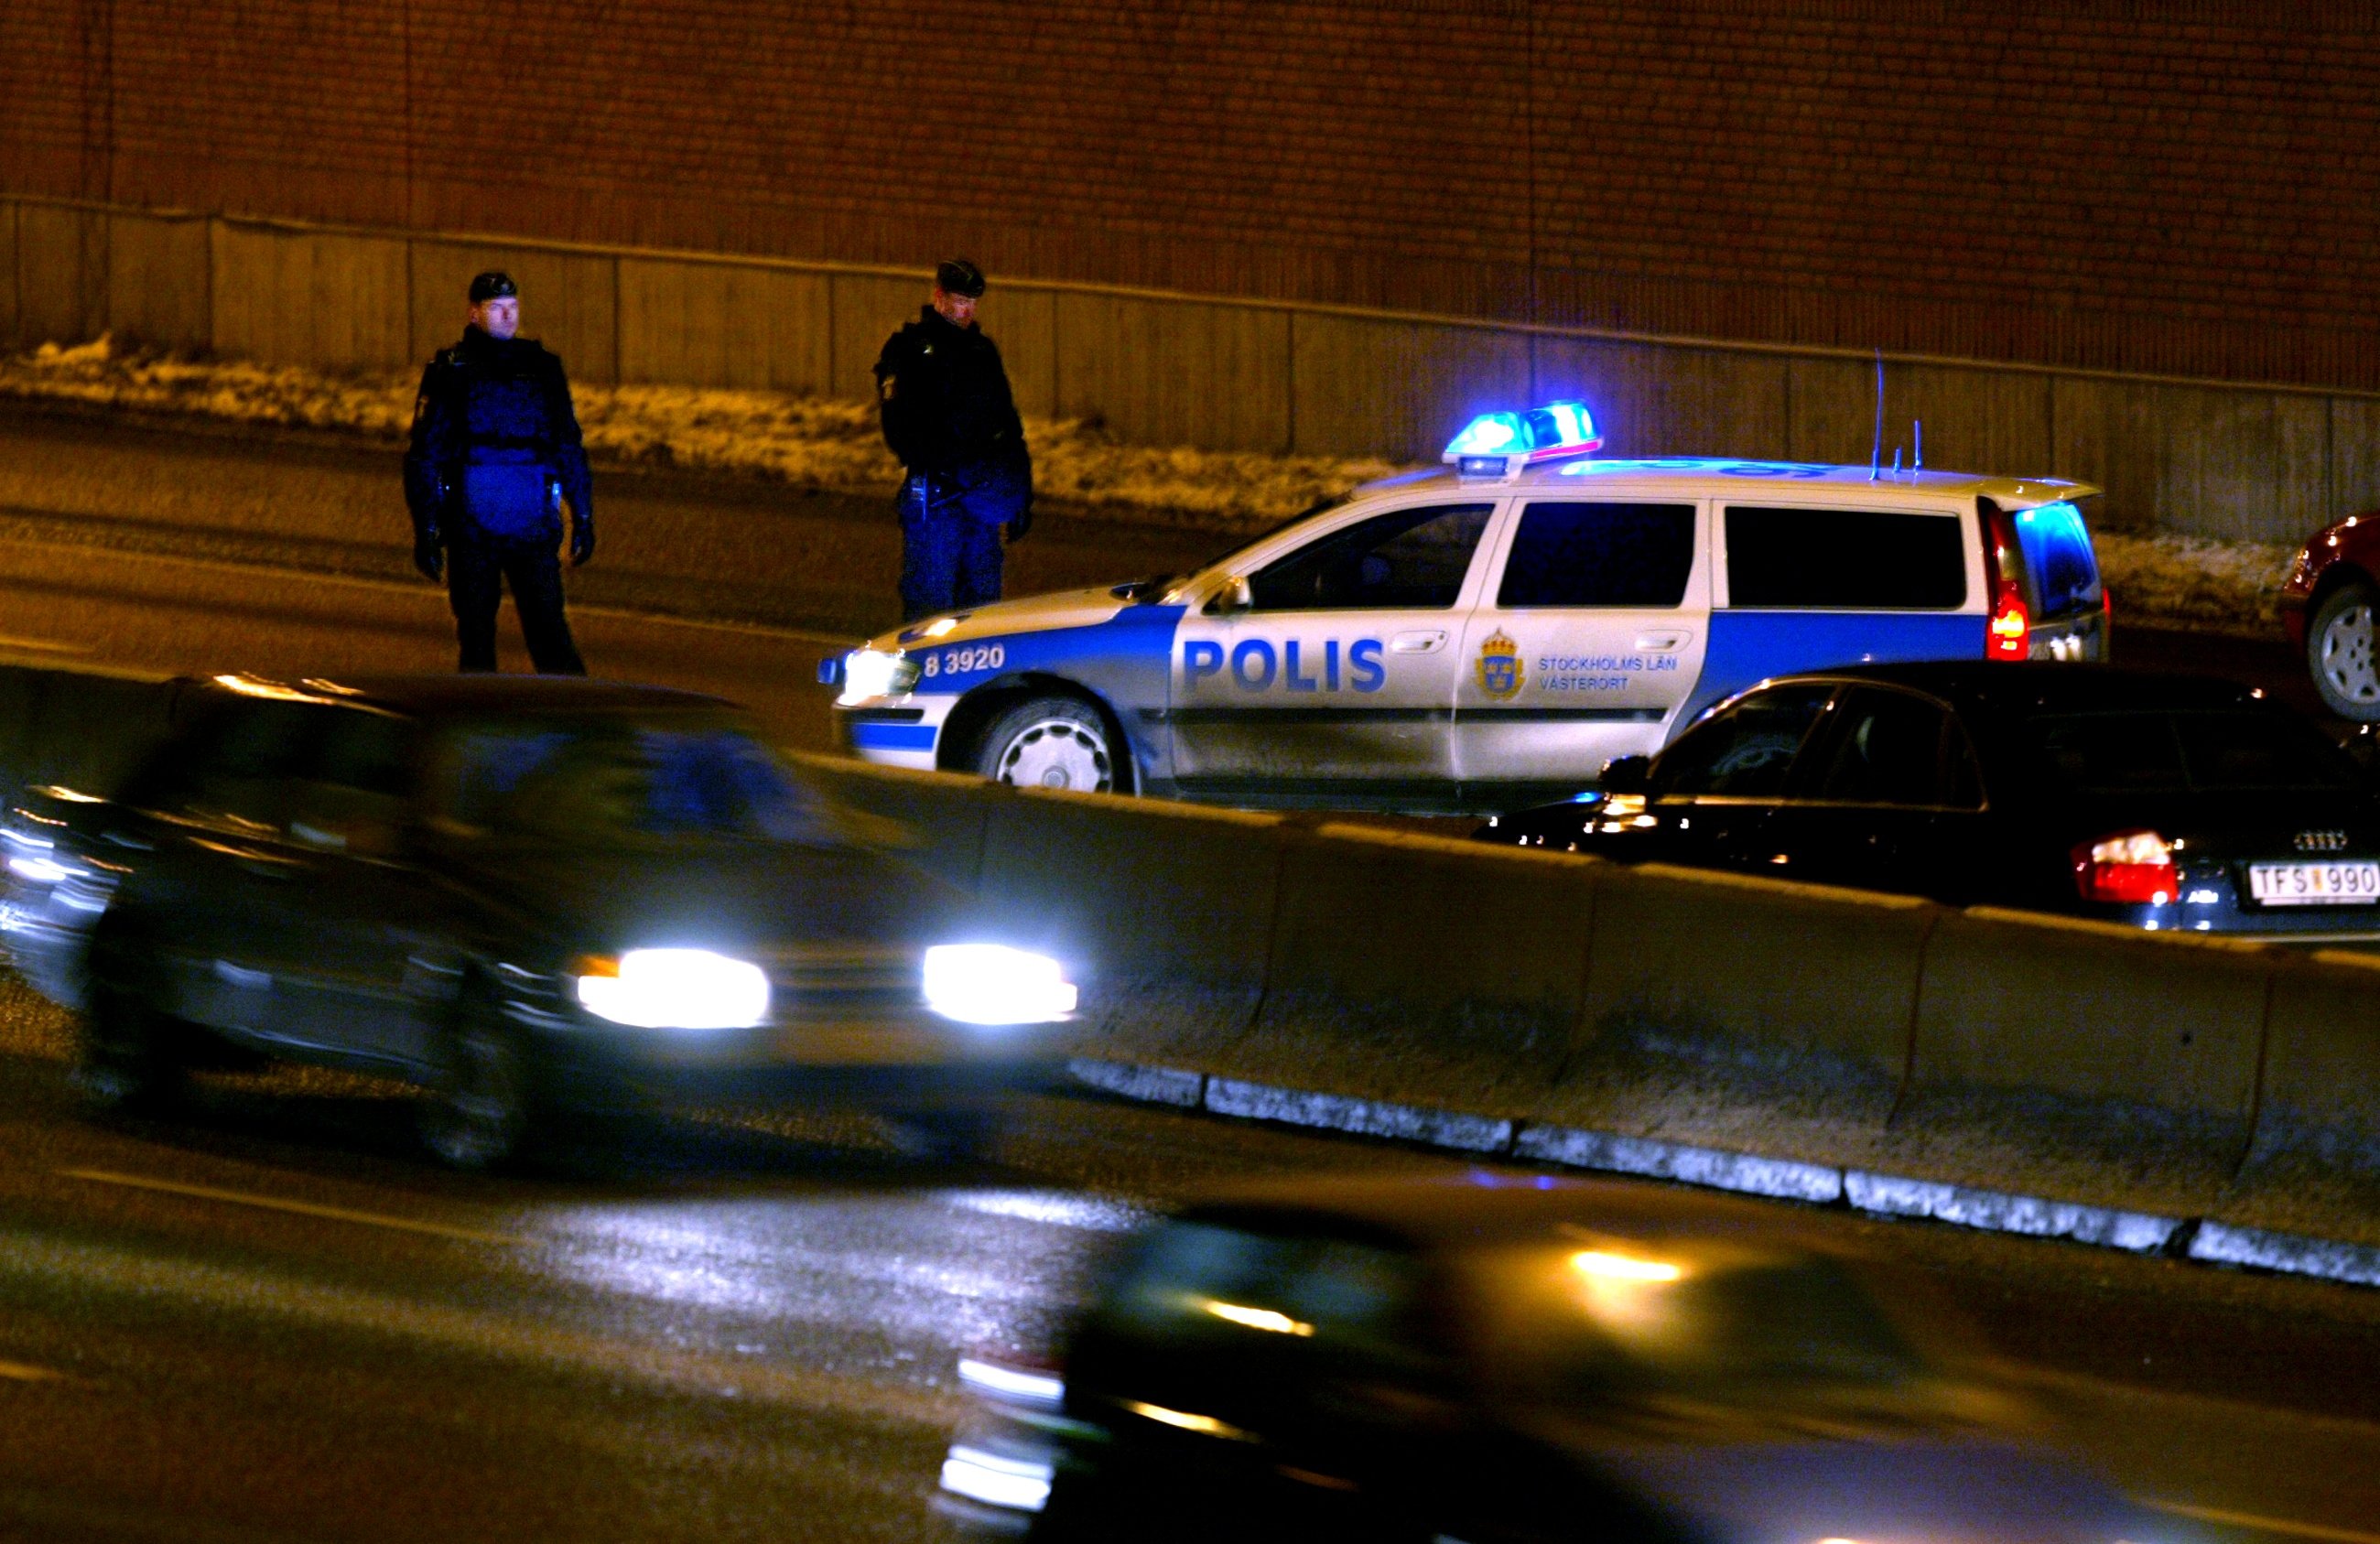 Fredrik Jansson stoppades av polis och ansåg att han kränktes.